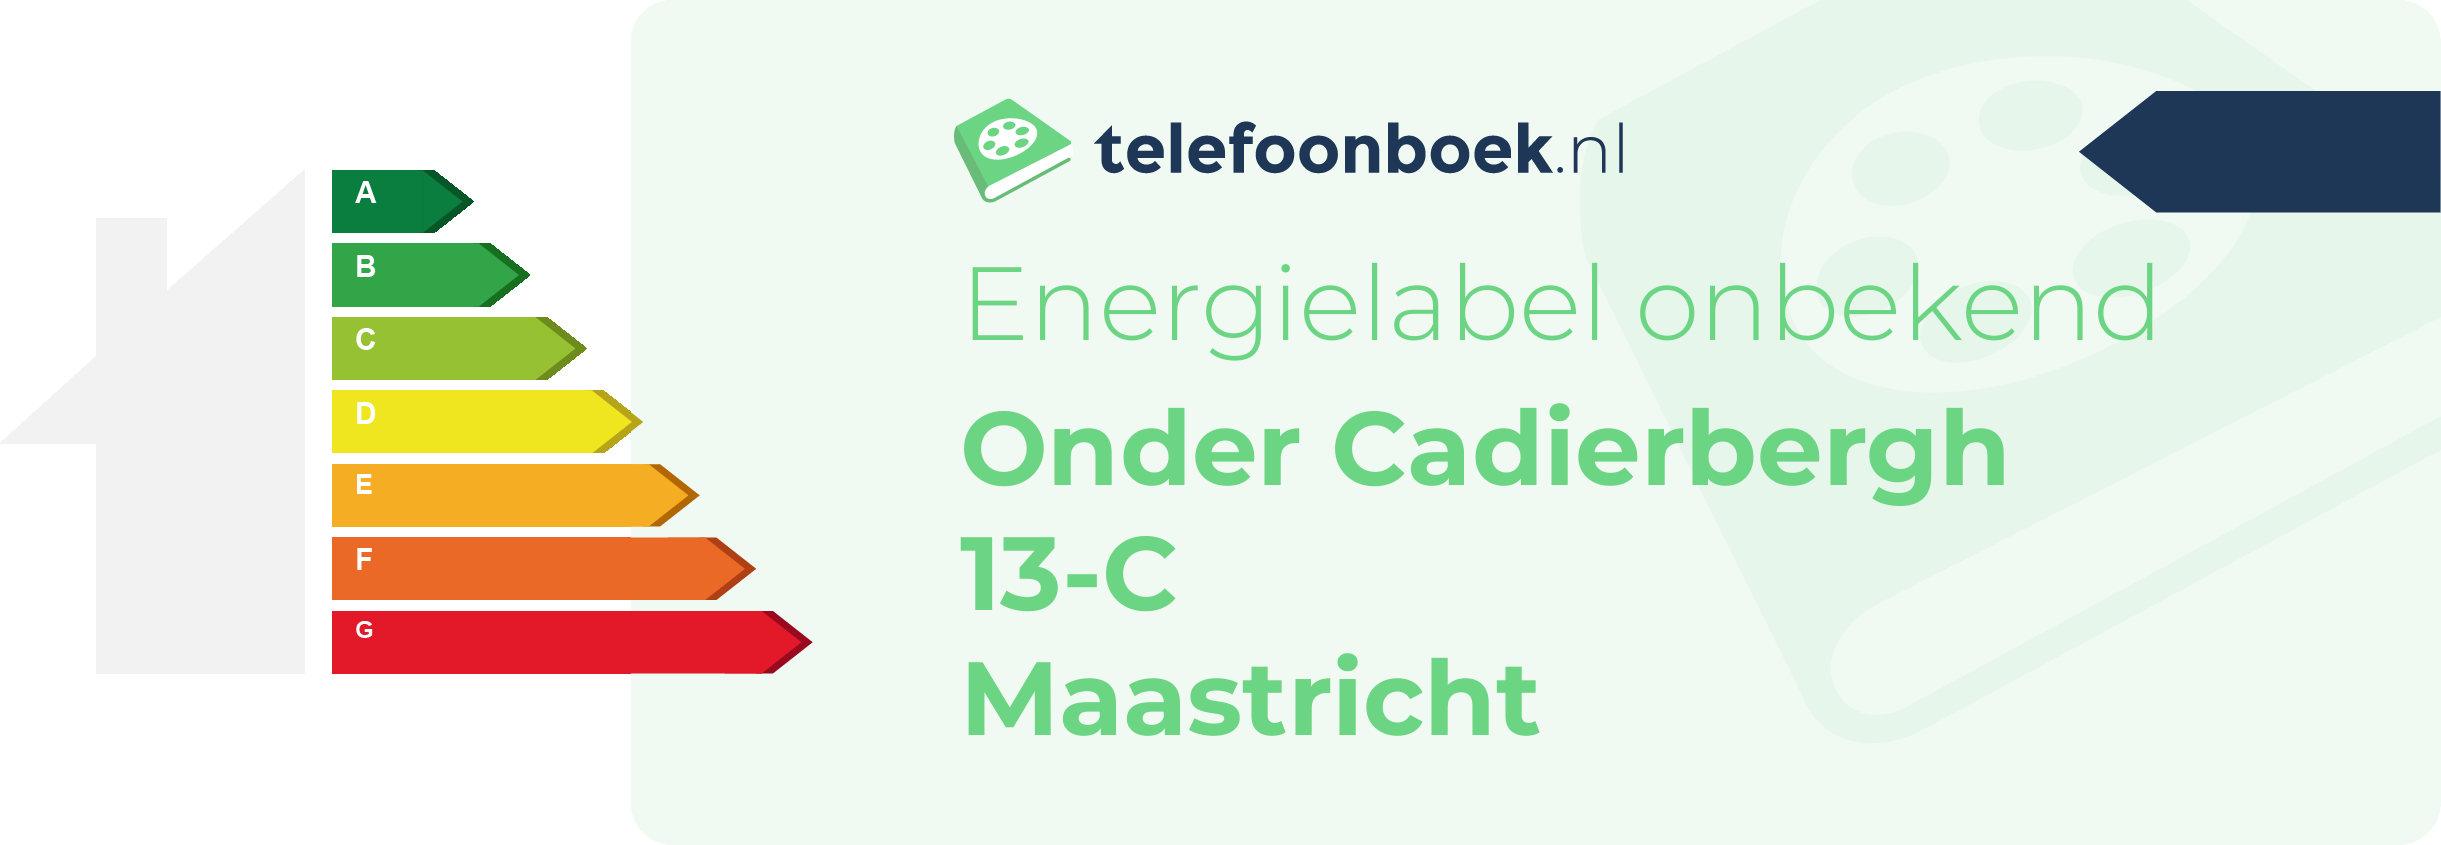 Energielabel Onder Cadierbergh 13-C Maastricht